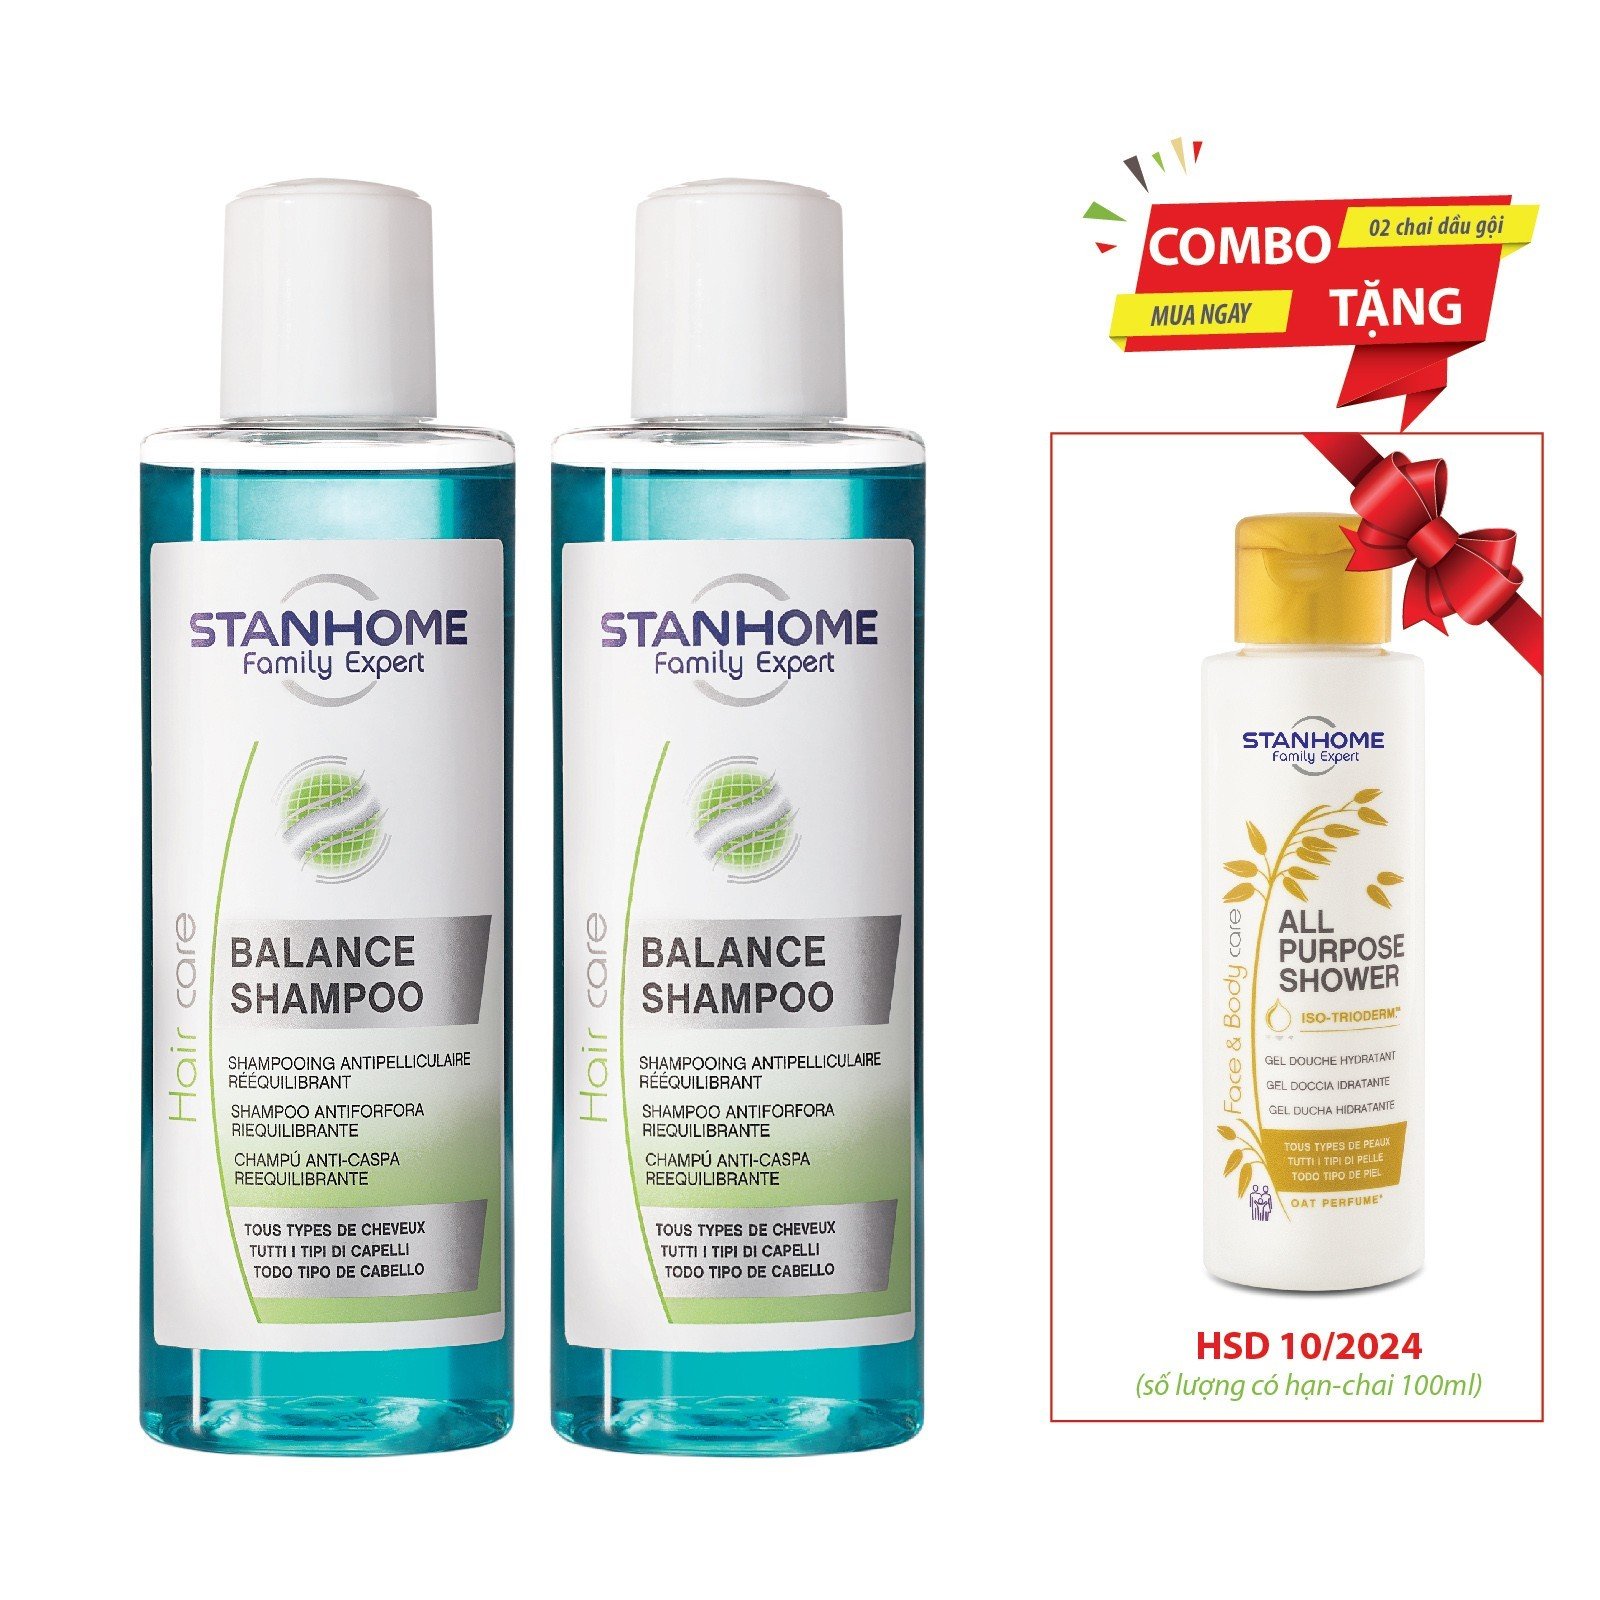 Dầu Gội Hỗ Trợ Trị Gàu Stanhome Balance Shampoo 200ml - 07482